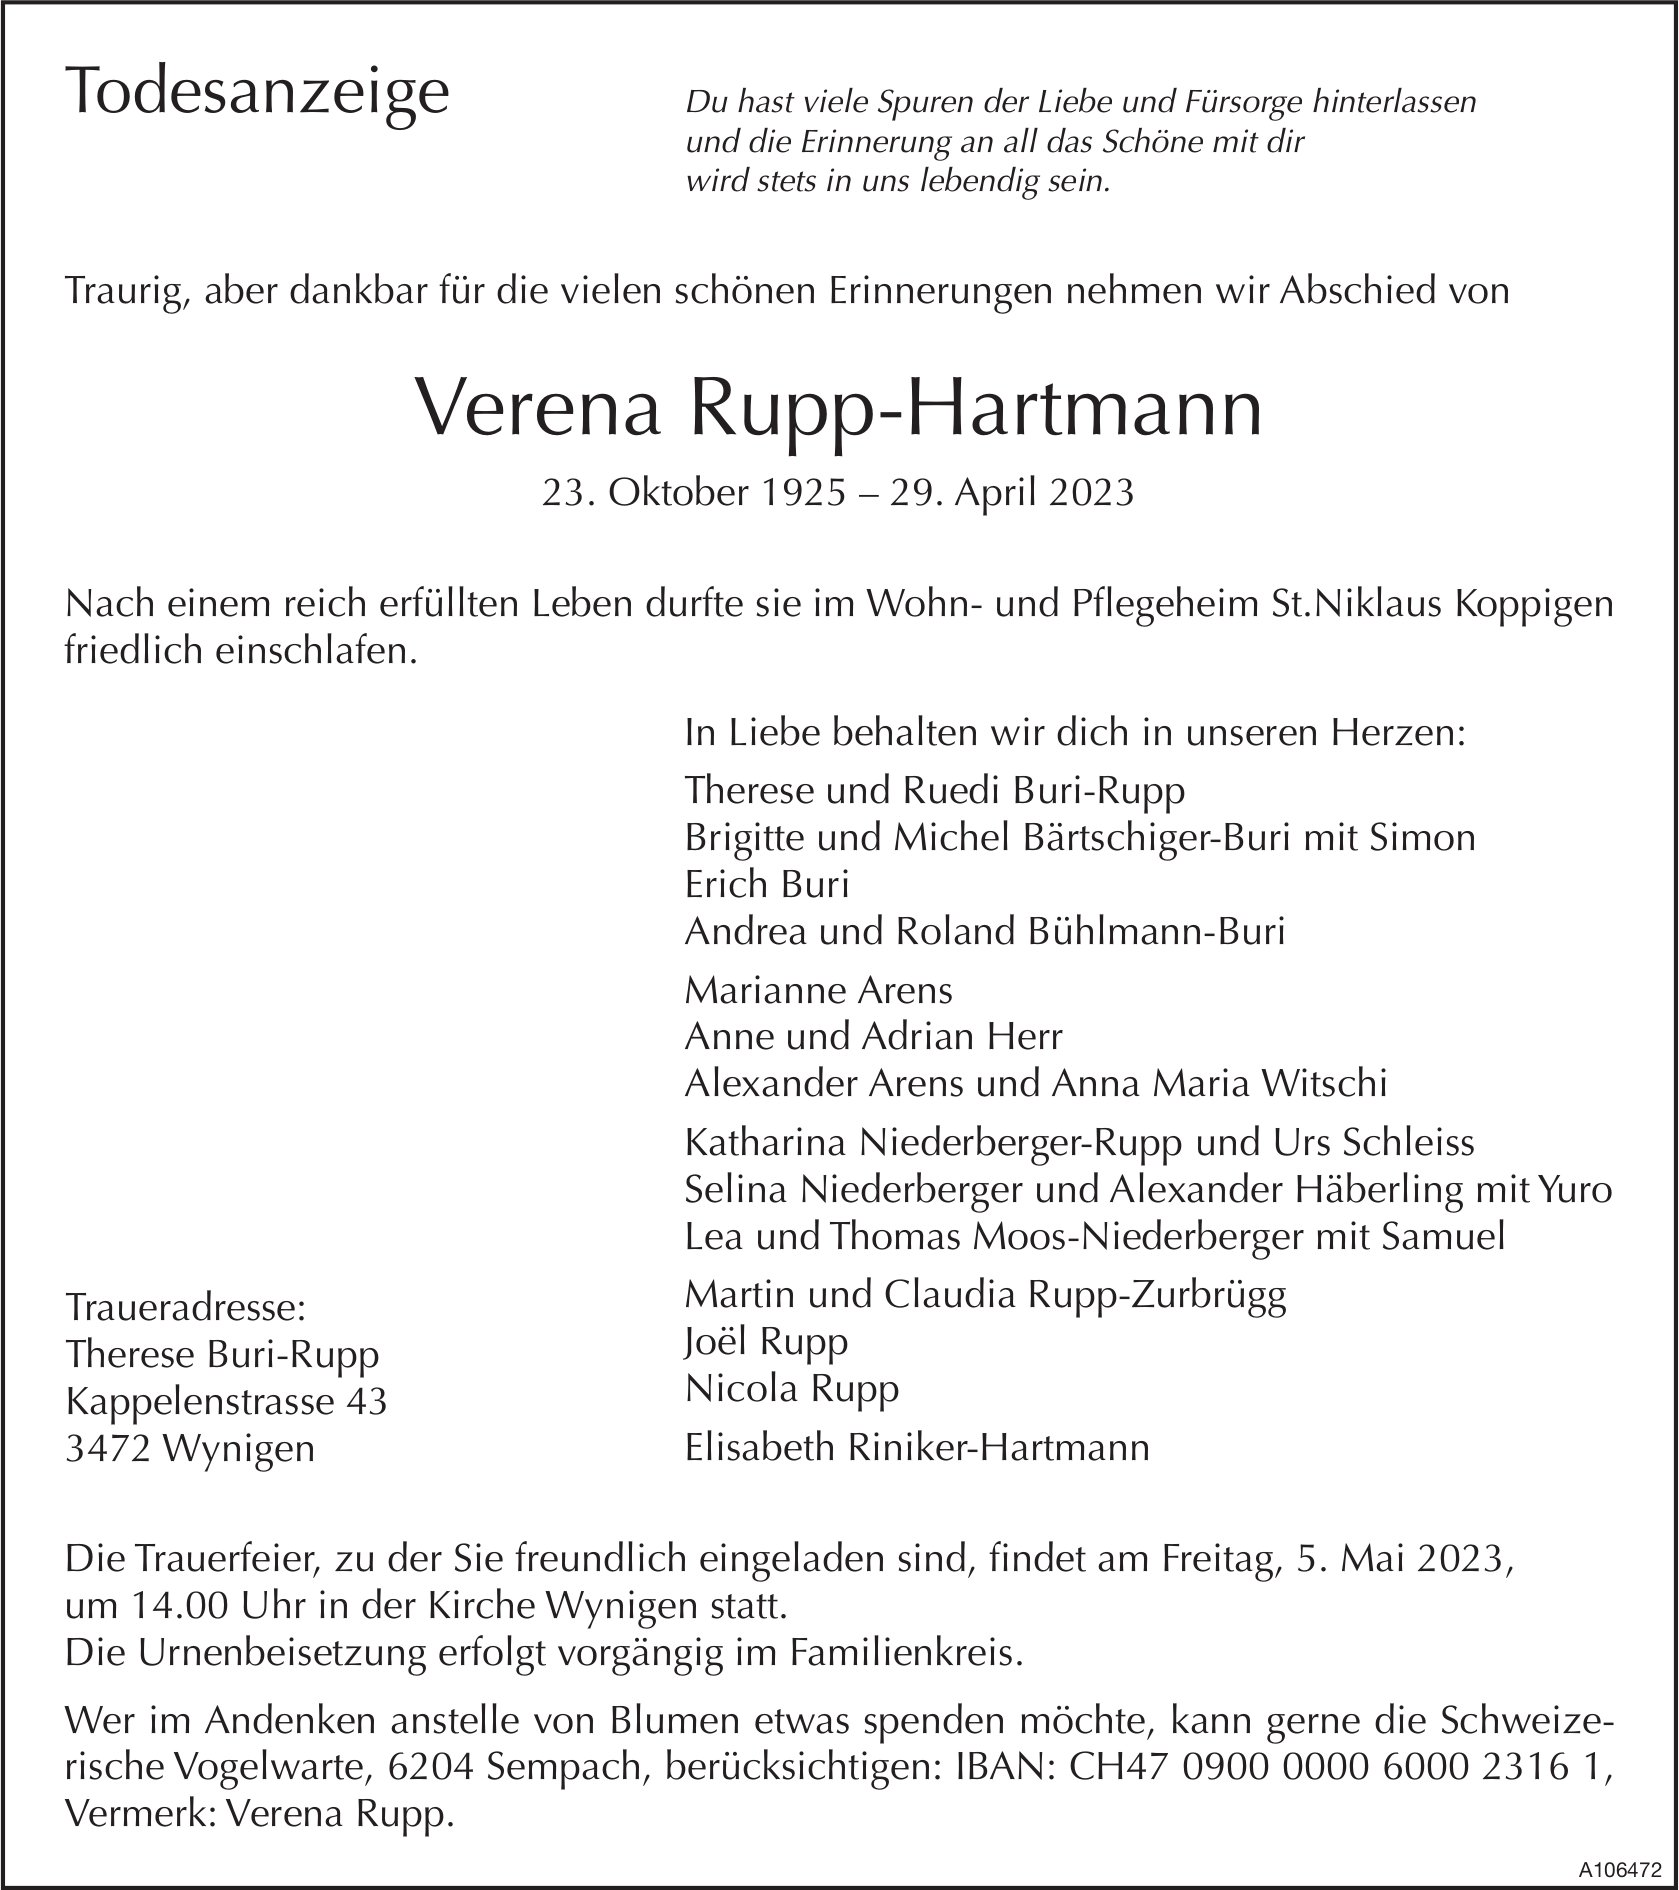 Verena Rupp-Hartmann, April 2023 / TA